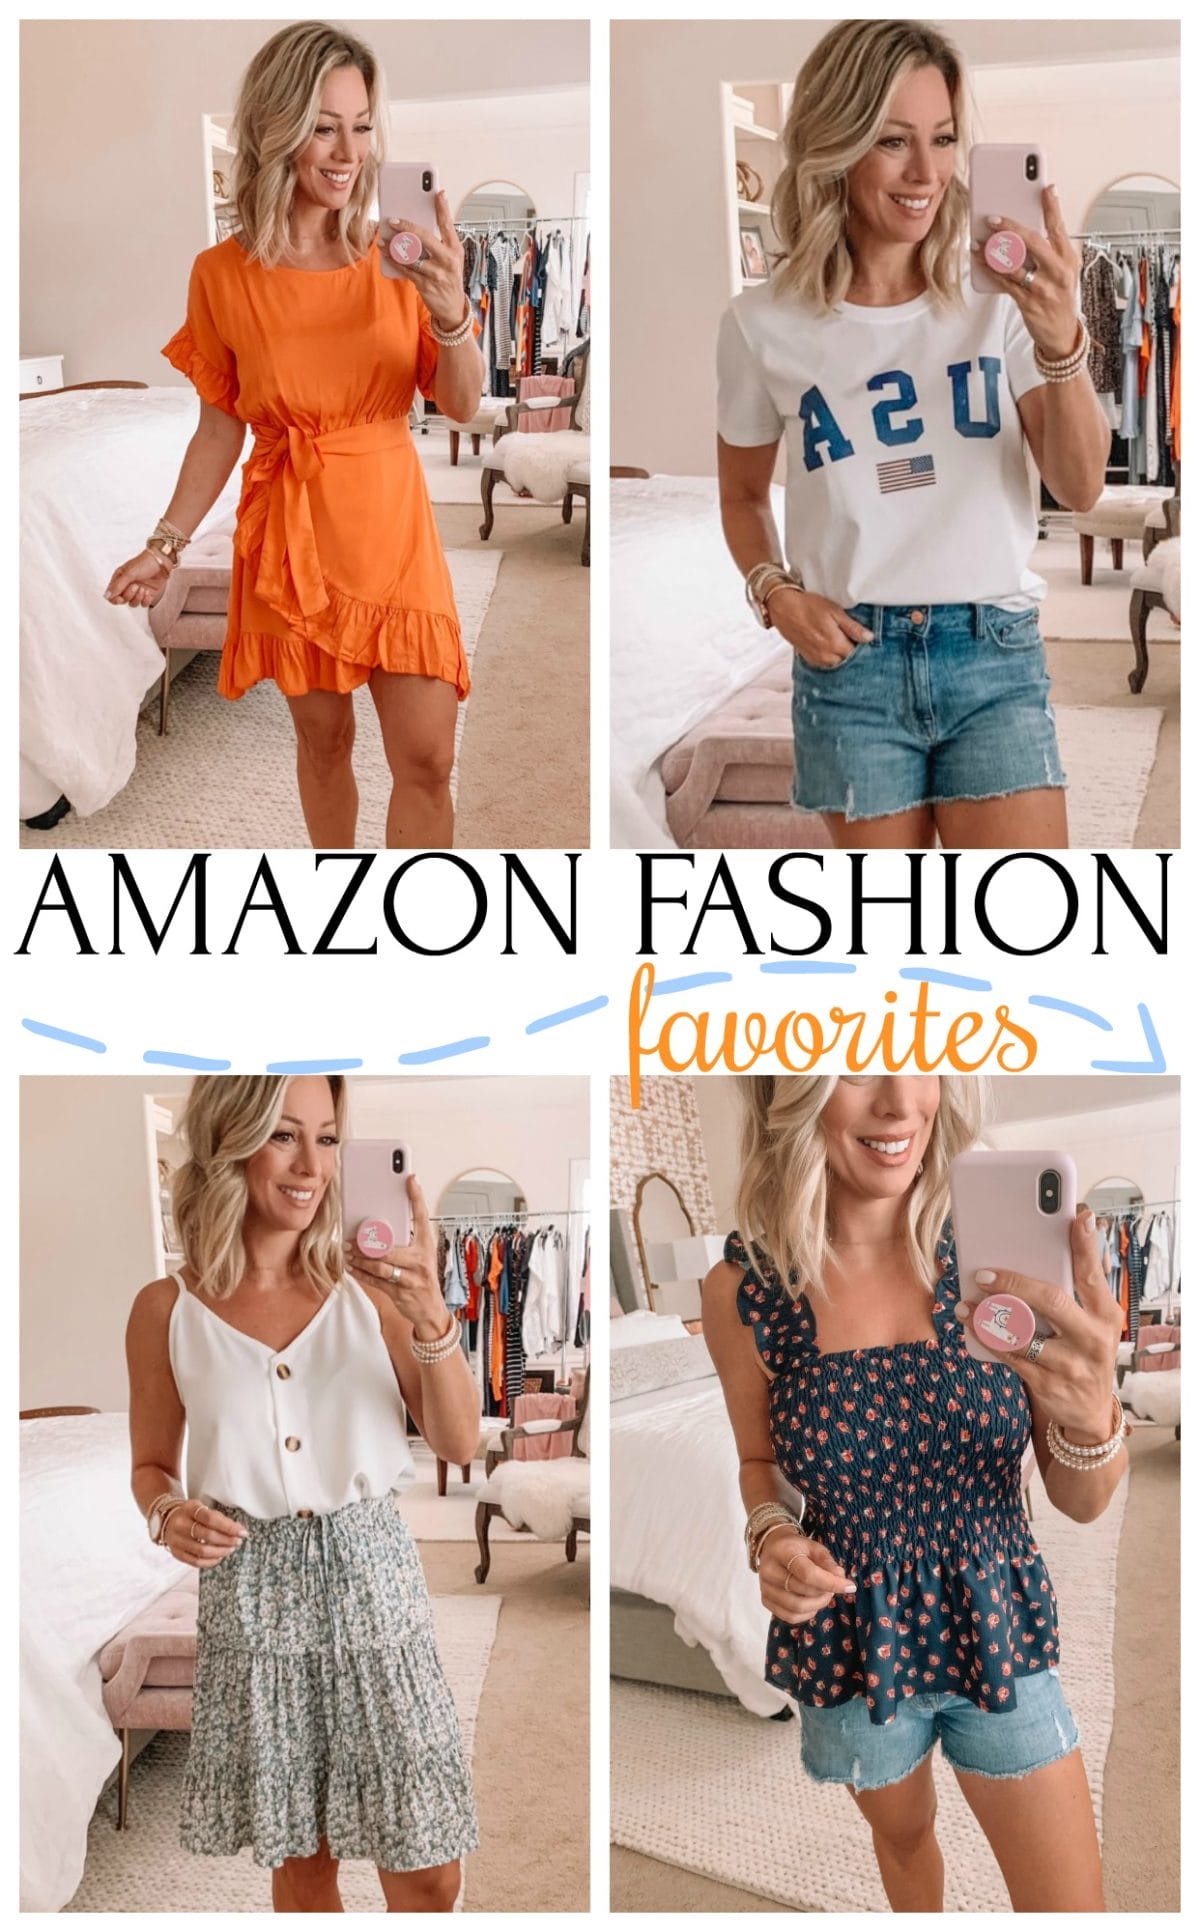 Amazon Fashion favorites